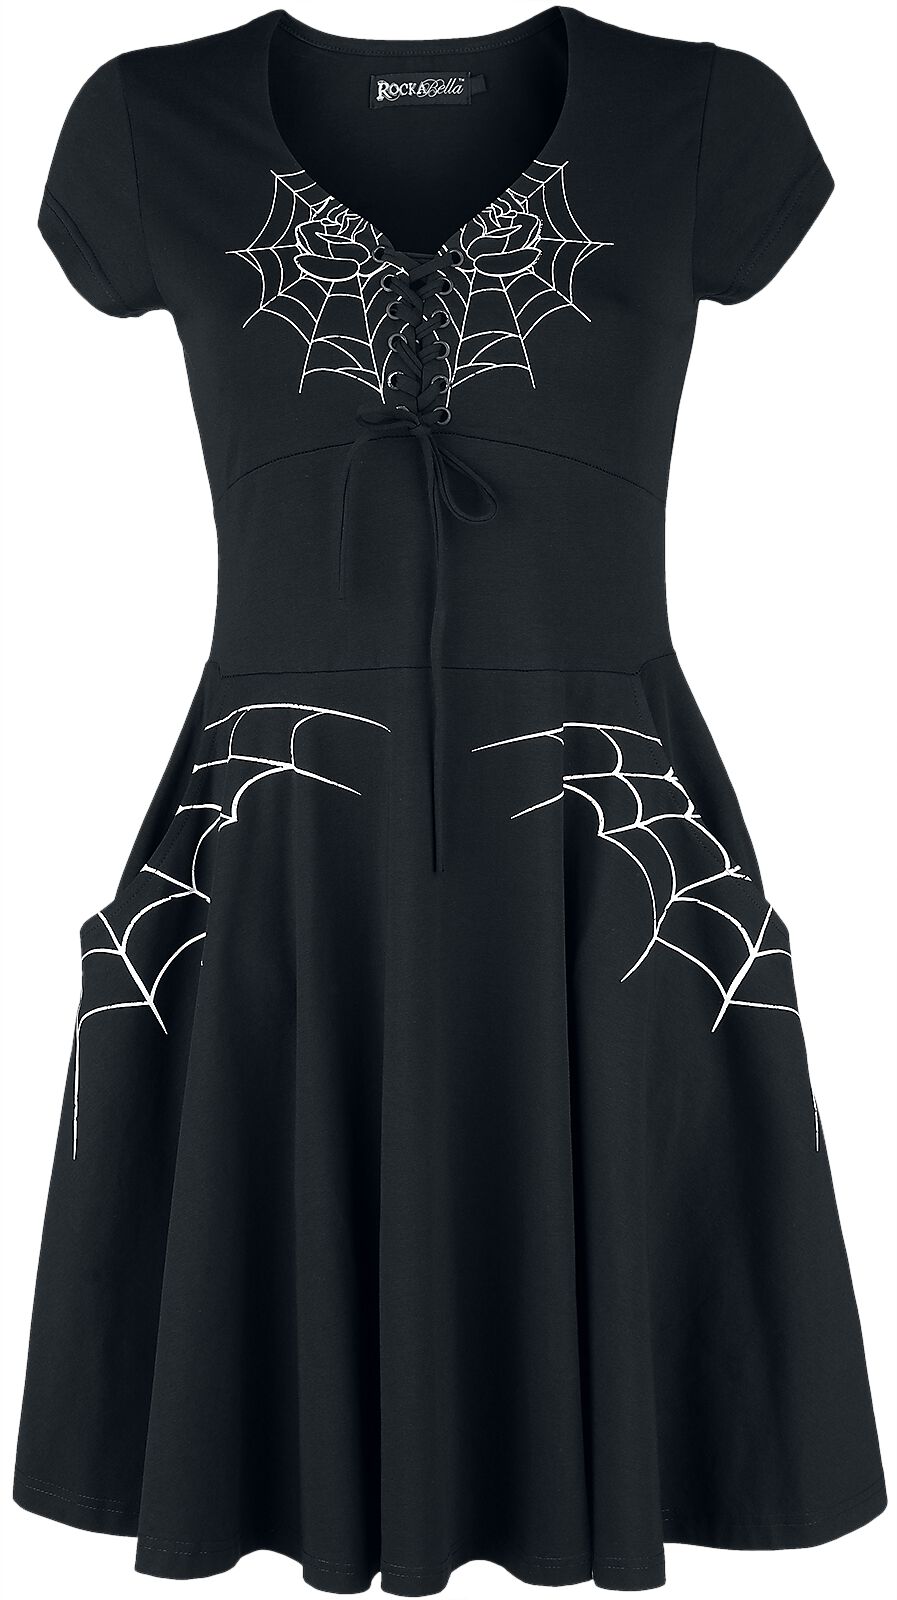 Rockabella Black Widow Dress Kurzes Kleid schwarz weiß in S